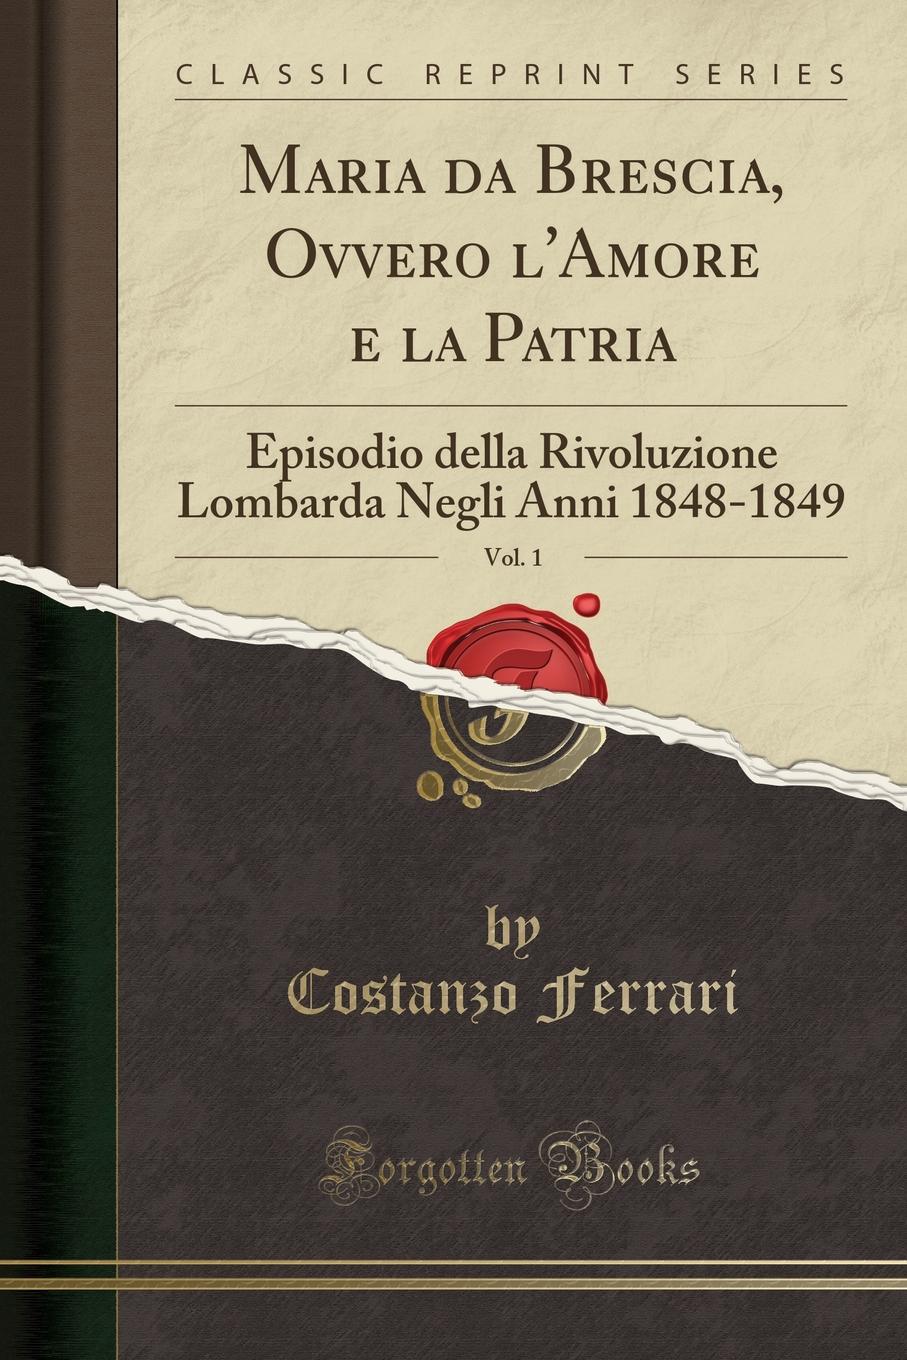 Maria da Brescia, Ovvero l.Amore e la Patria, Vol. 1. Episodio della Rivoluzione Lombarda Negli Anni 1848-1849 (Classic Reprint)